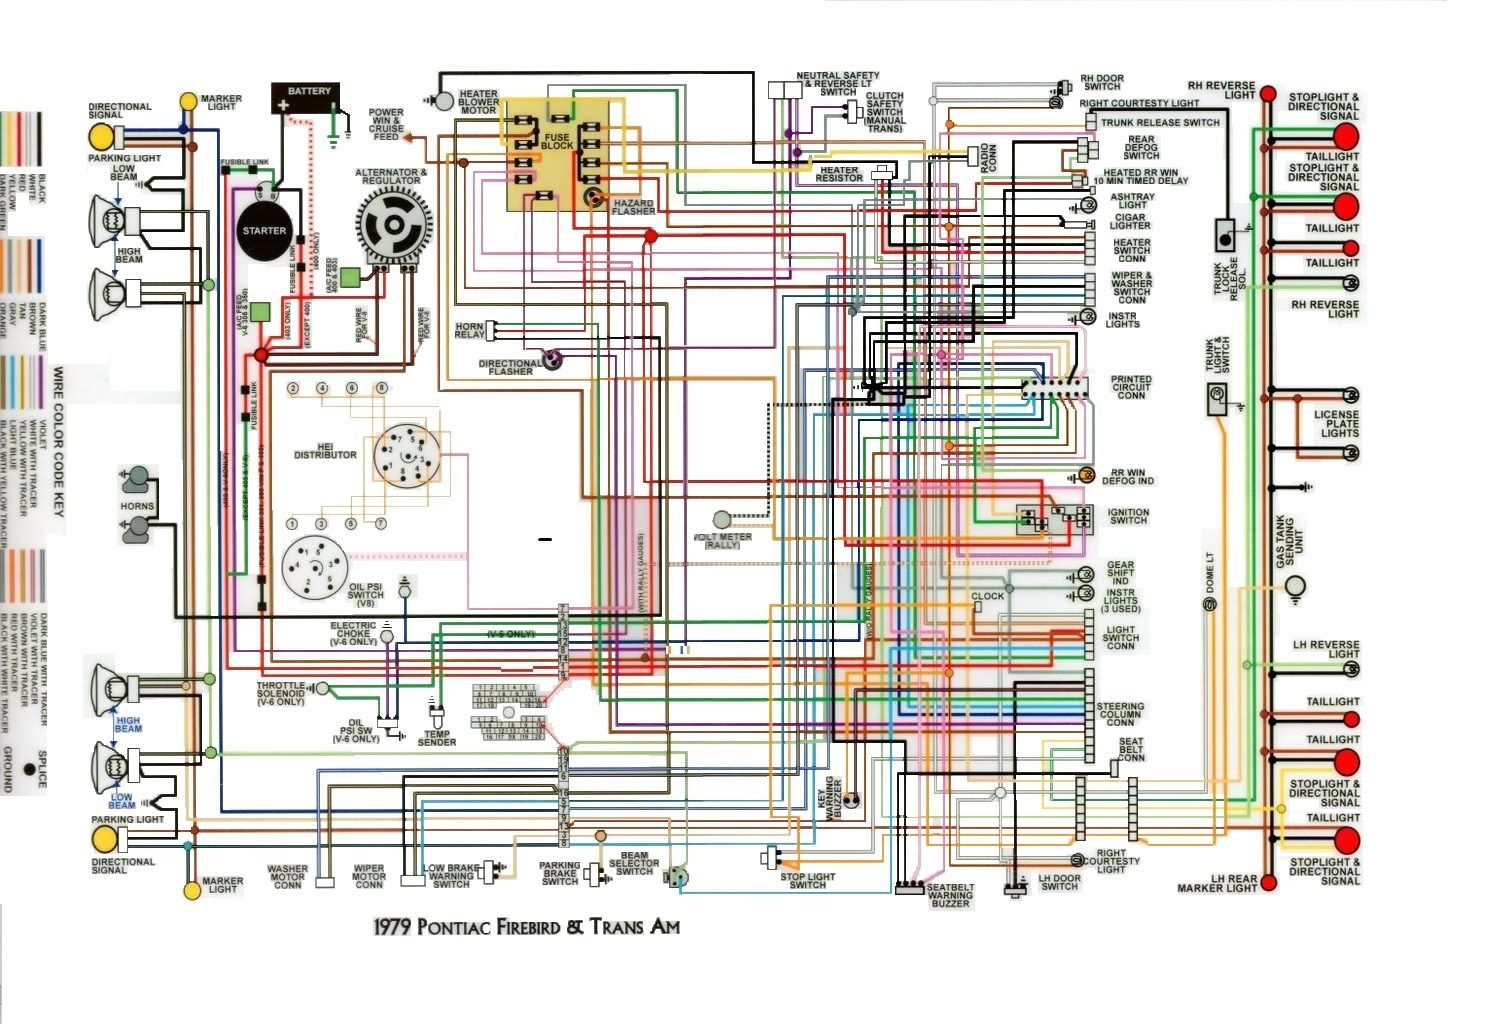 1981 Trans Am Wiring Diagram FULL HD Version Wiring Diagram - WWW